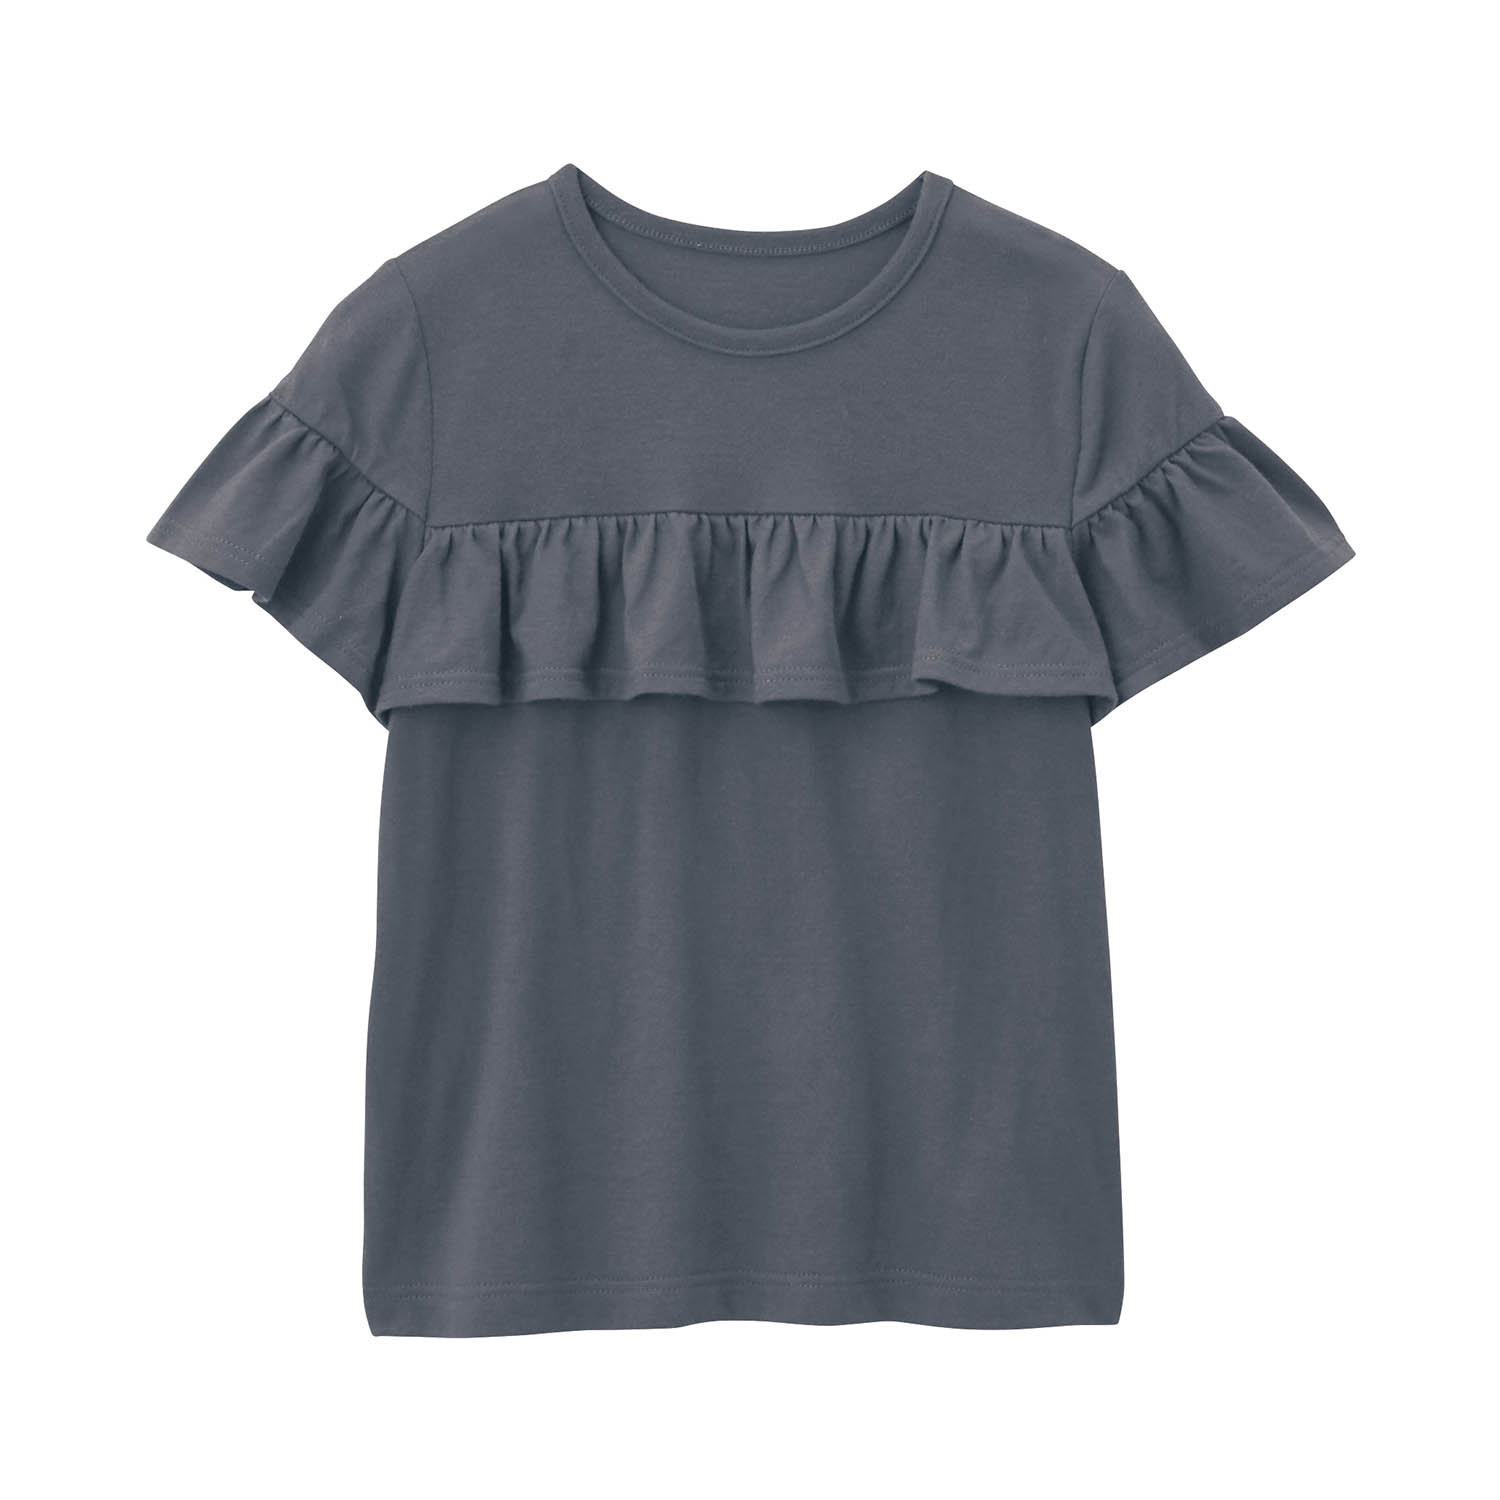 Tシャツ 子供 子供服 女の子 薄い 涼しい フリル デザイン GITA ジータ 100 110 1...